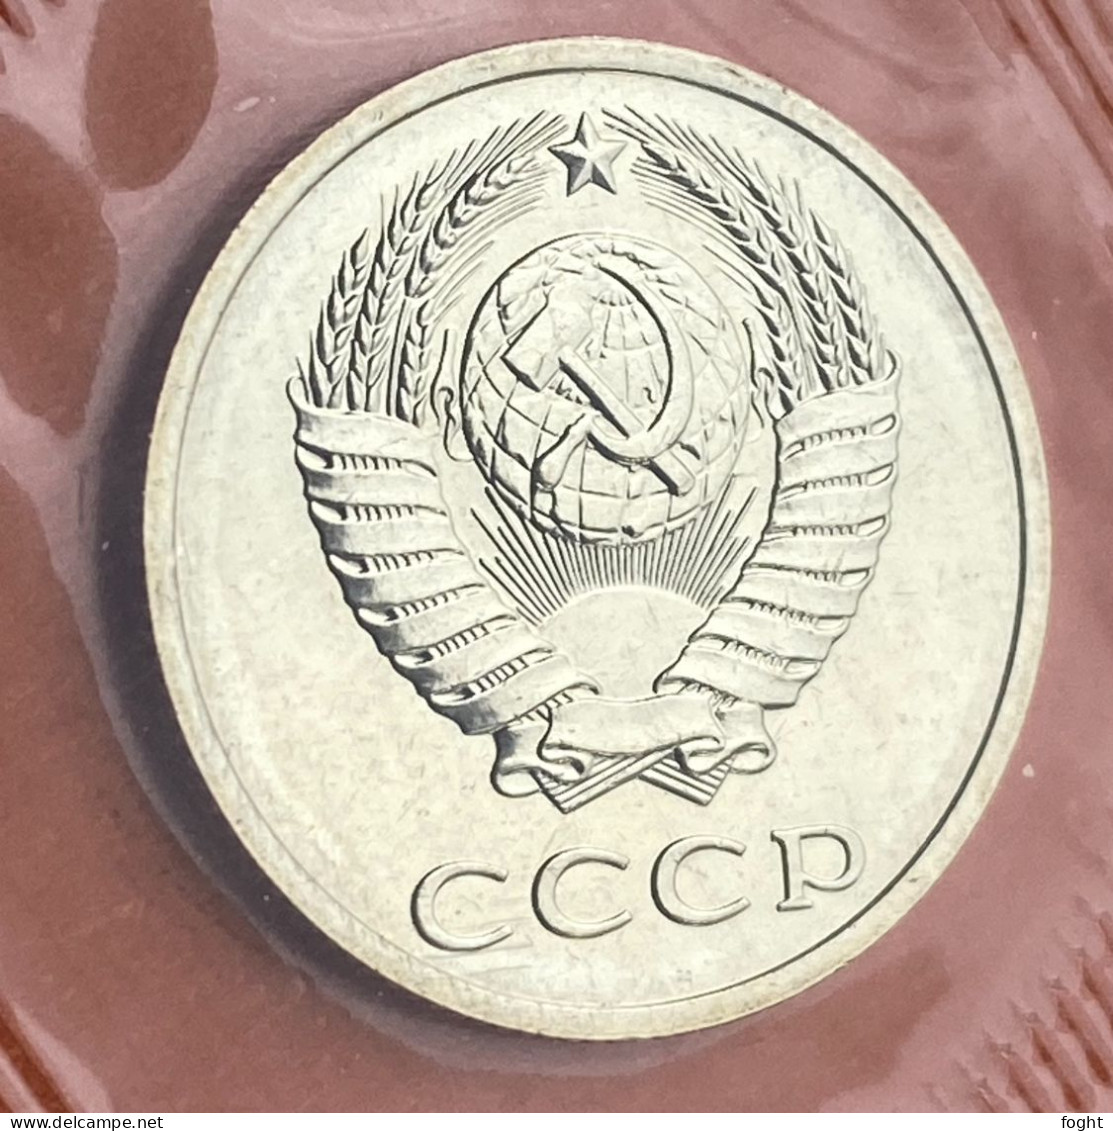 1989 ММД Russia coins(9) set